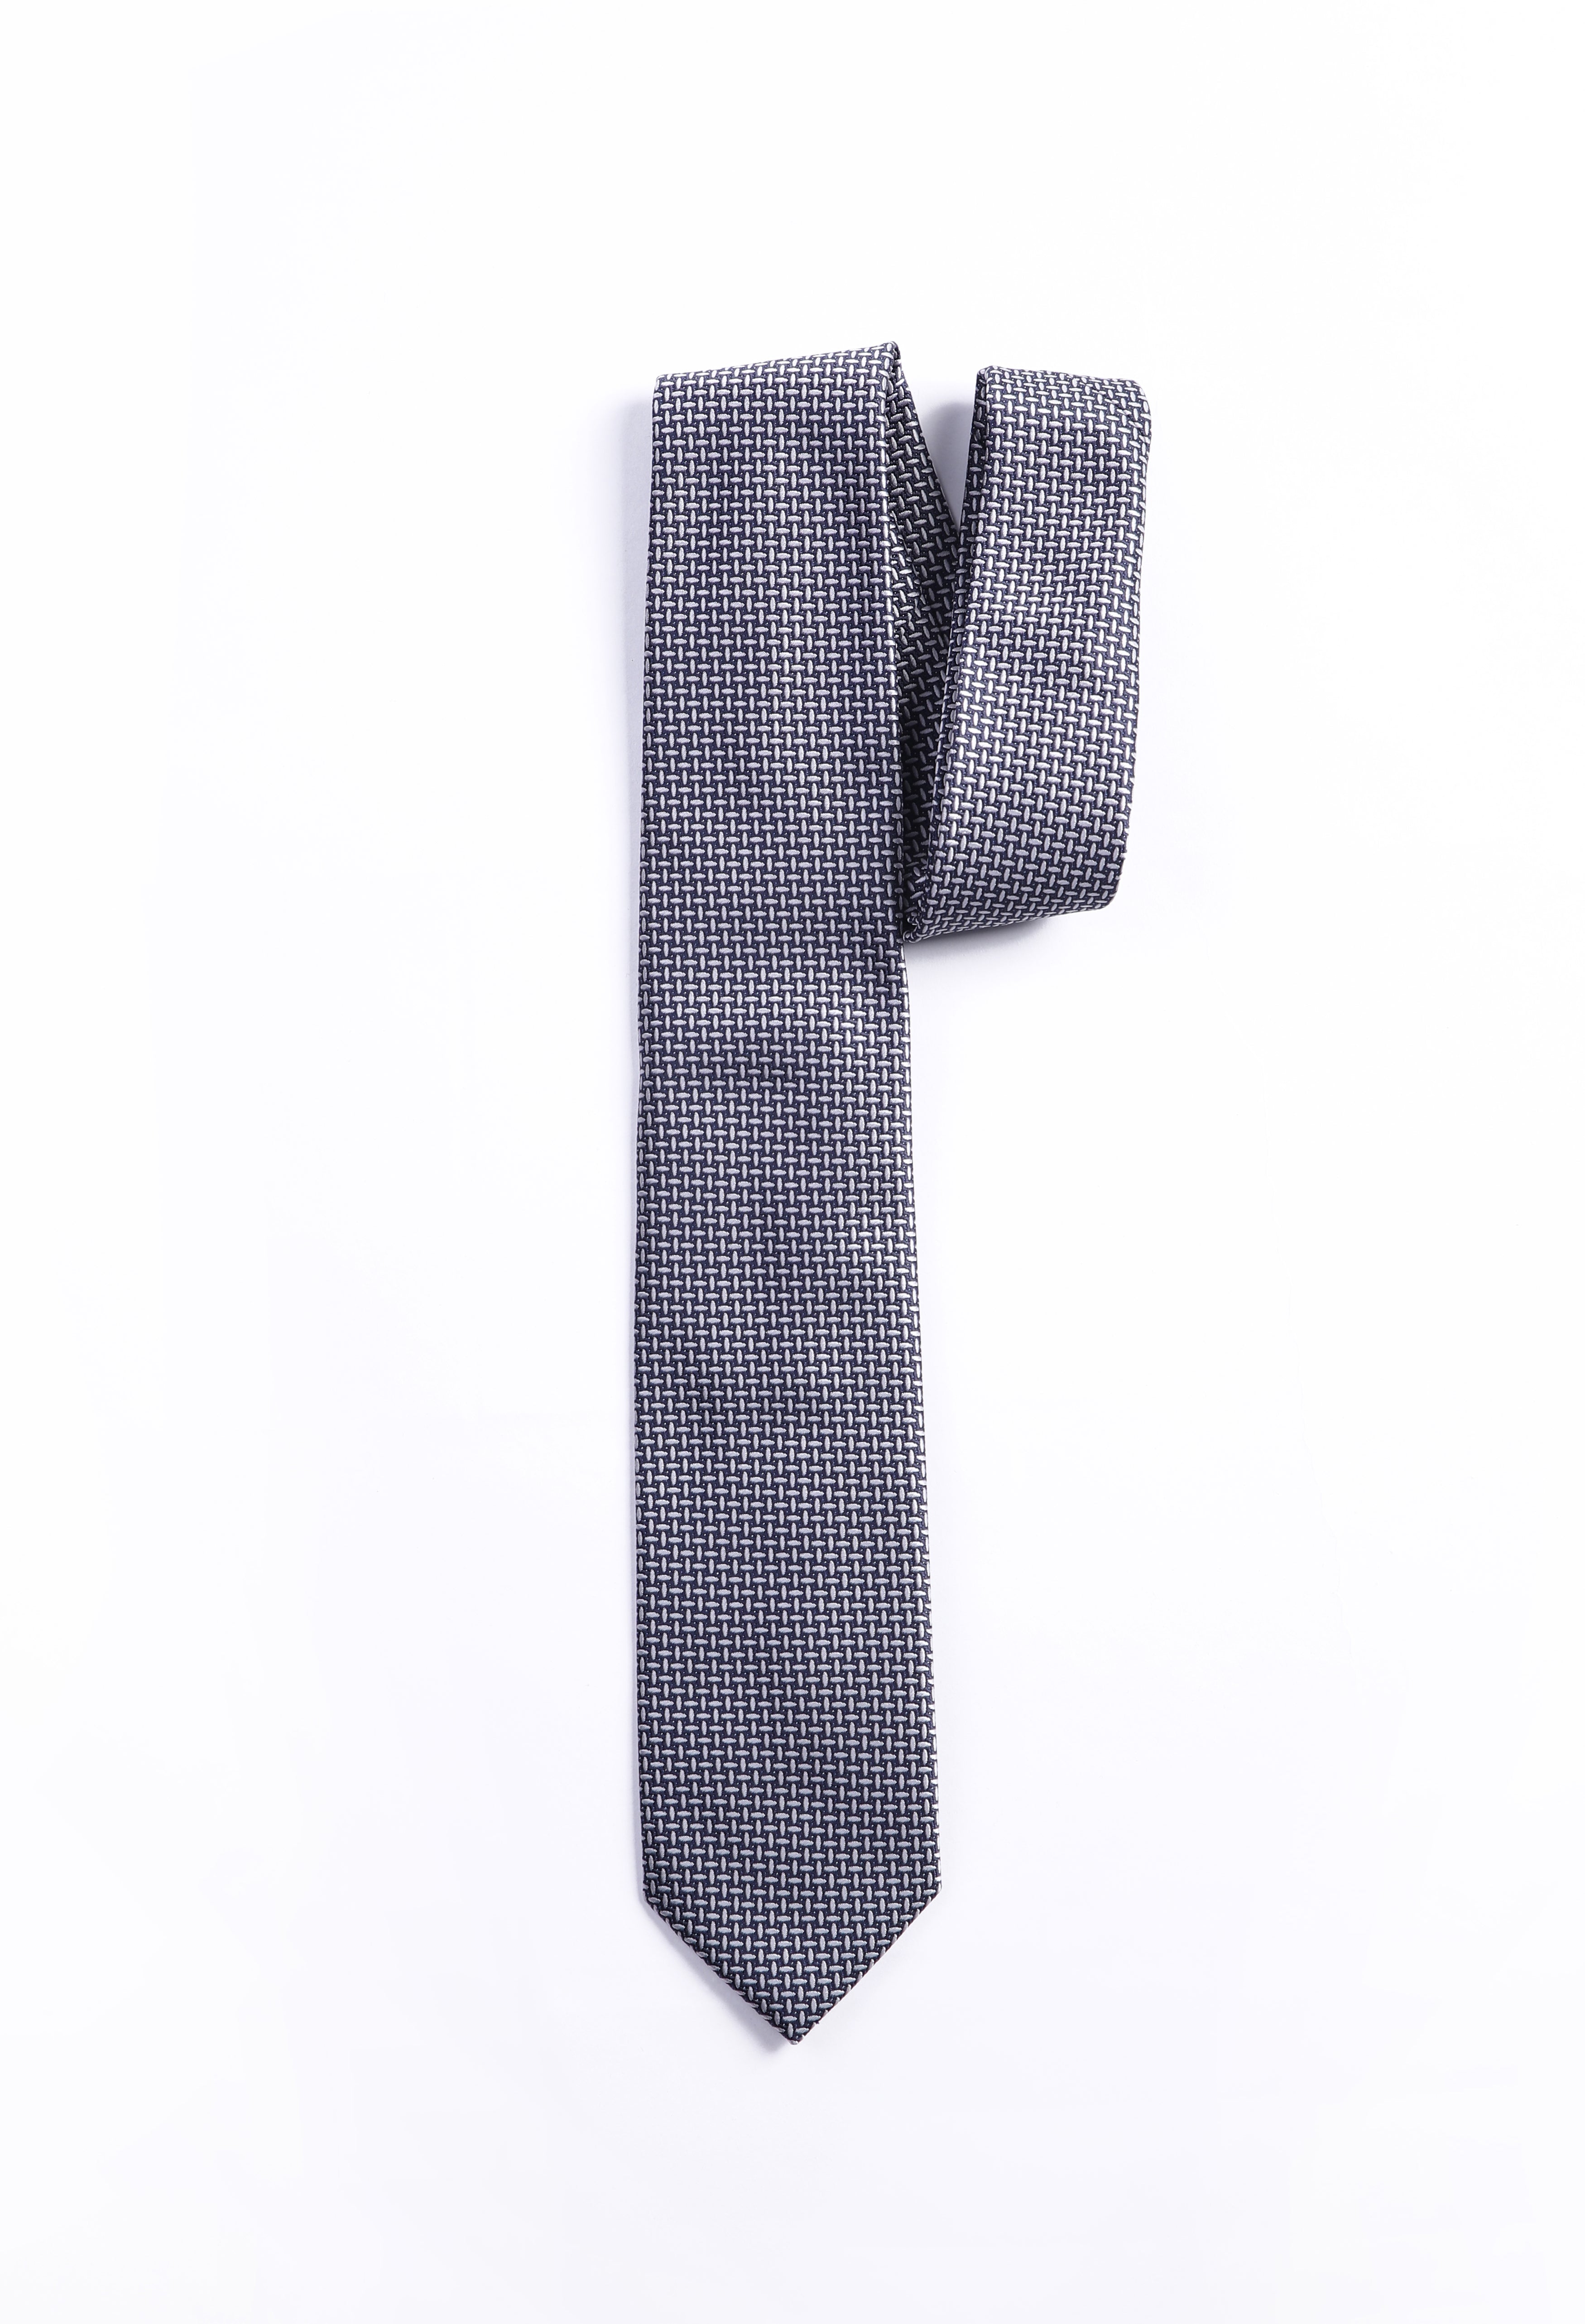 Gunmetal Grey Zigzag Tie (TIE-000035)